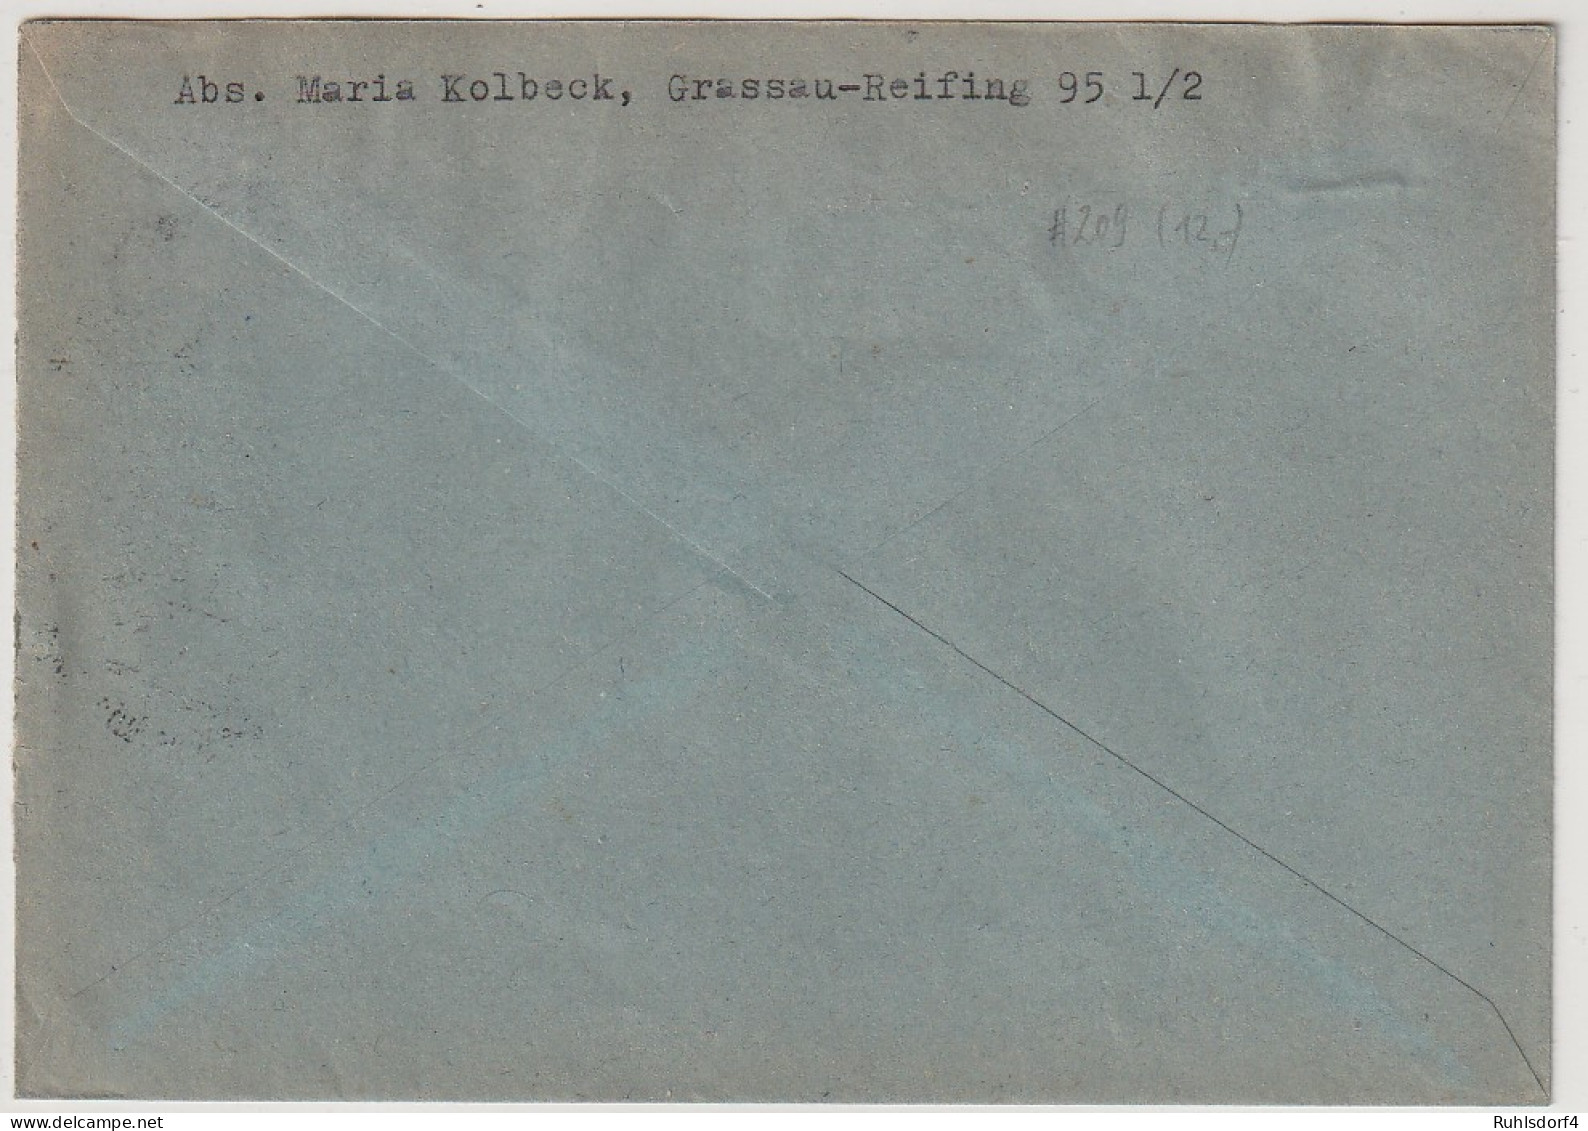 Bund: Oskar Von Miller (Nr. 209) In Sauberer MeF - Lettres & Documents